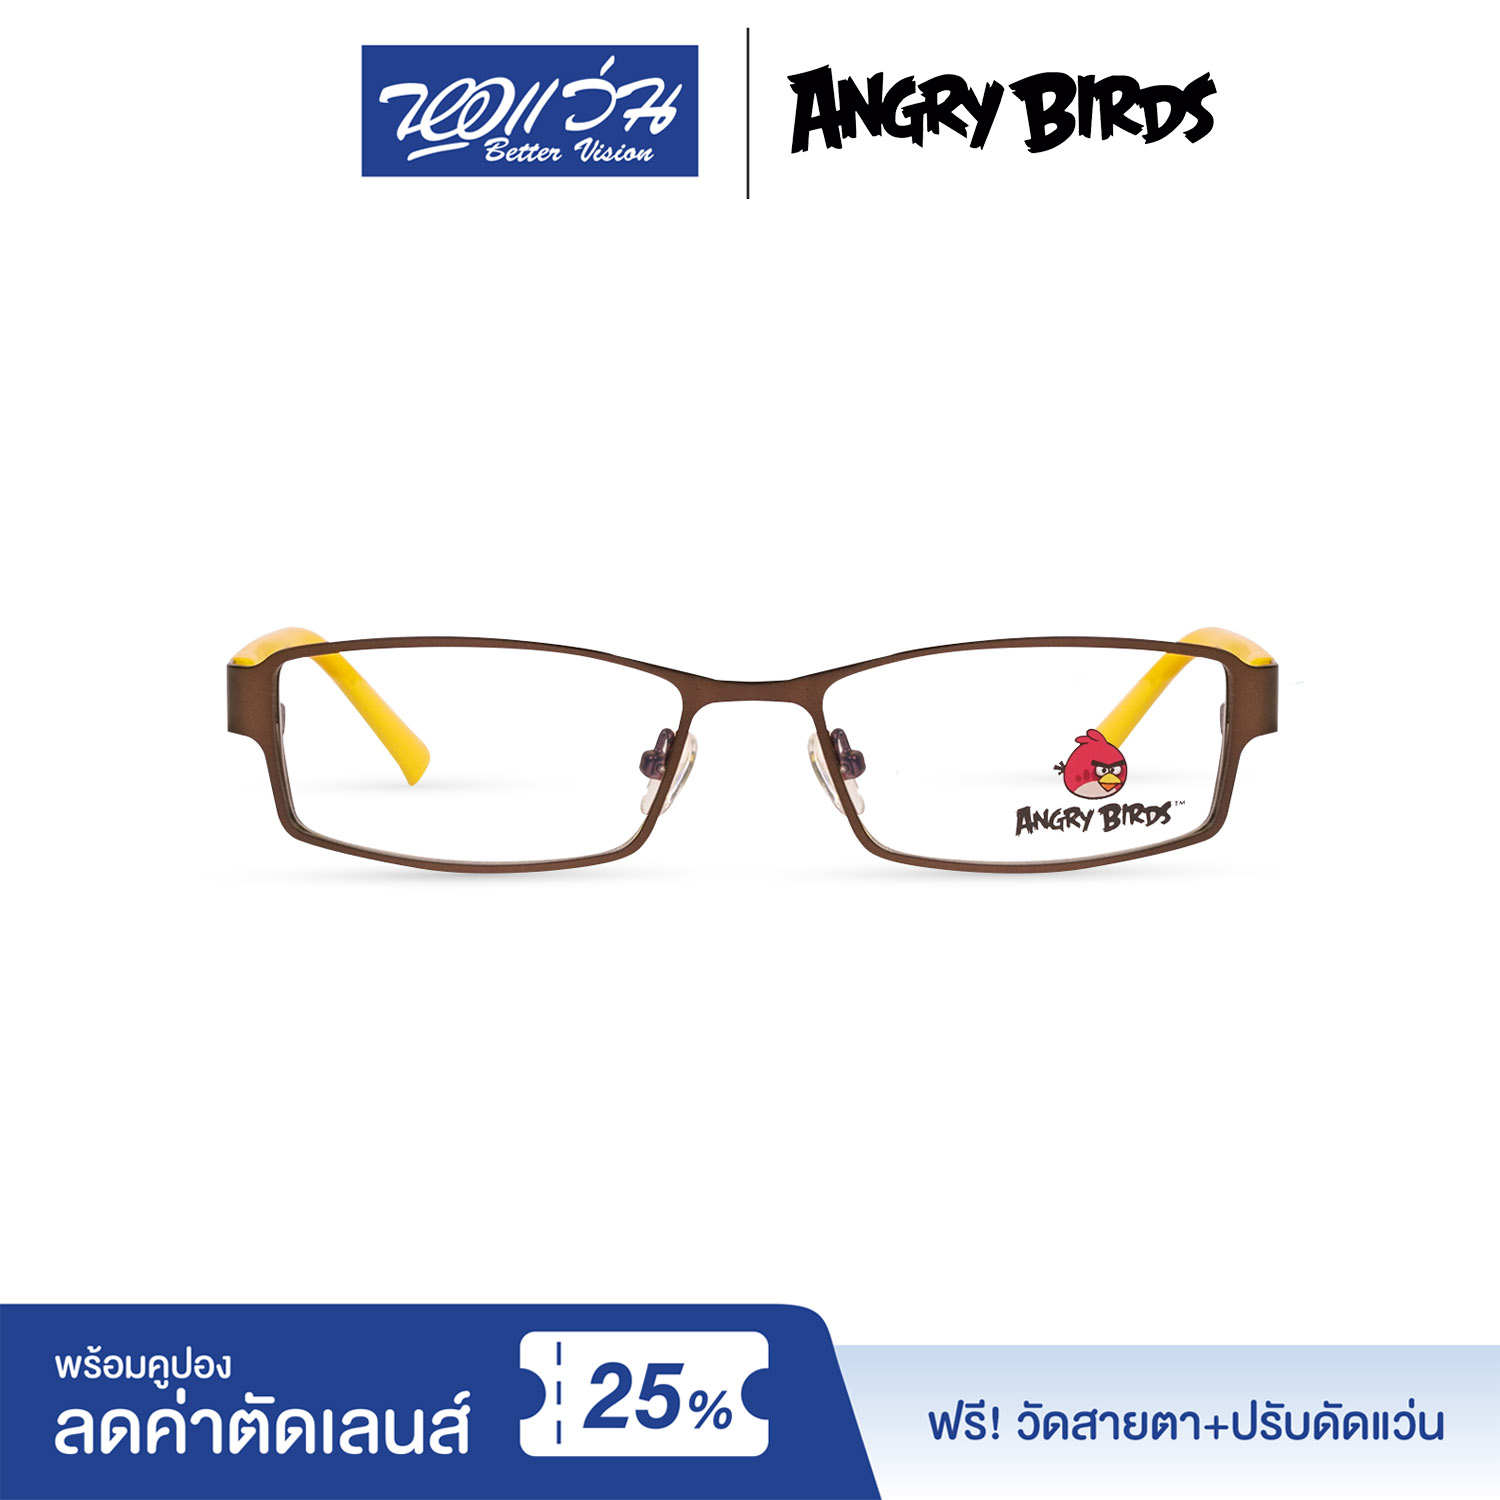 กรอบแว่นตาเด็ก แองกี้ เบิร์ด ANGRY BIRDS Child glasses แถมฟรีส่วนลดค่าตัดเลนส์ 25%  free 25% lens discount รุ่น FAG22102